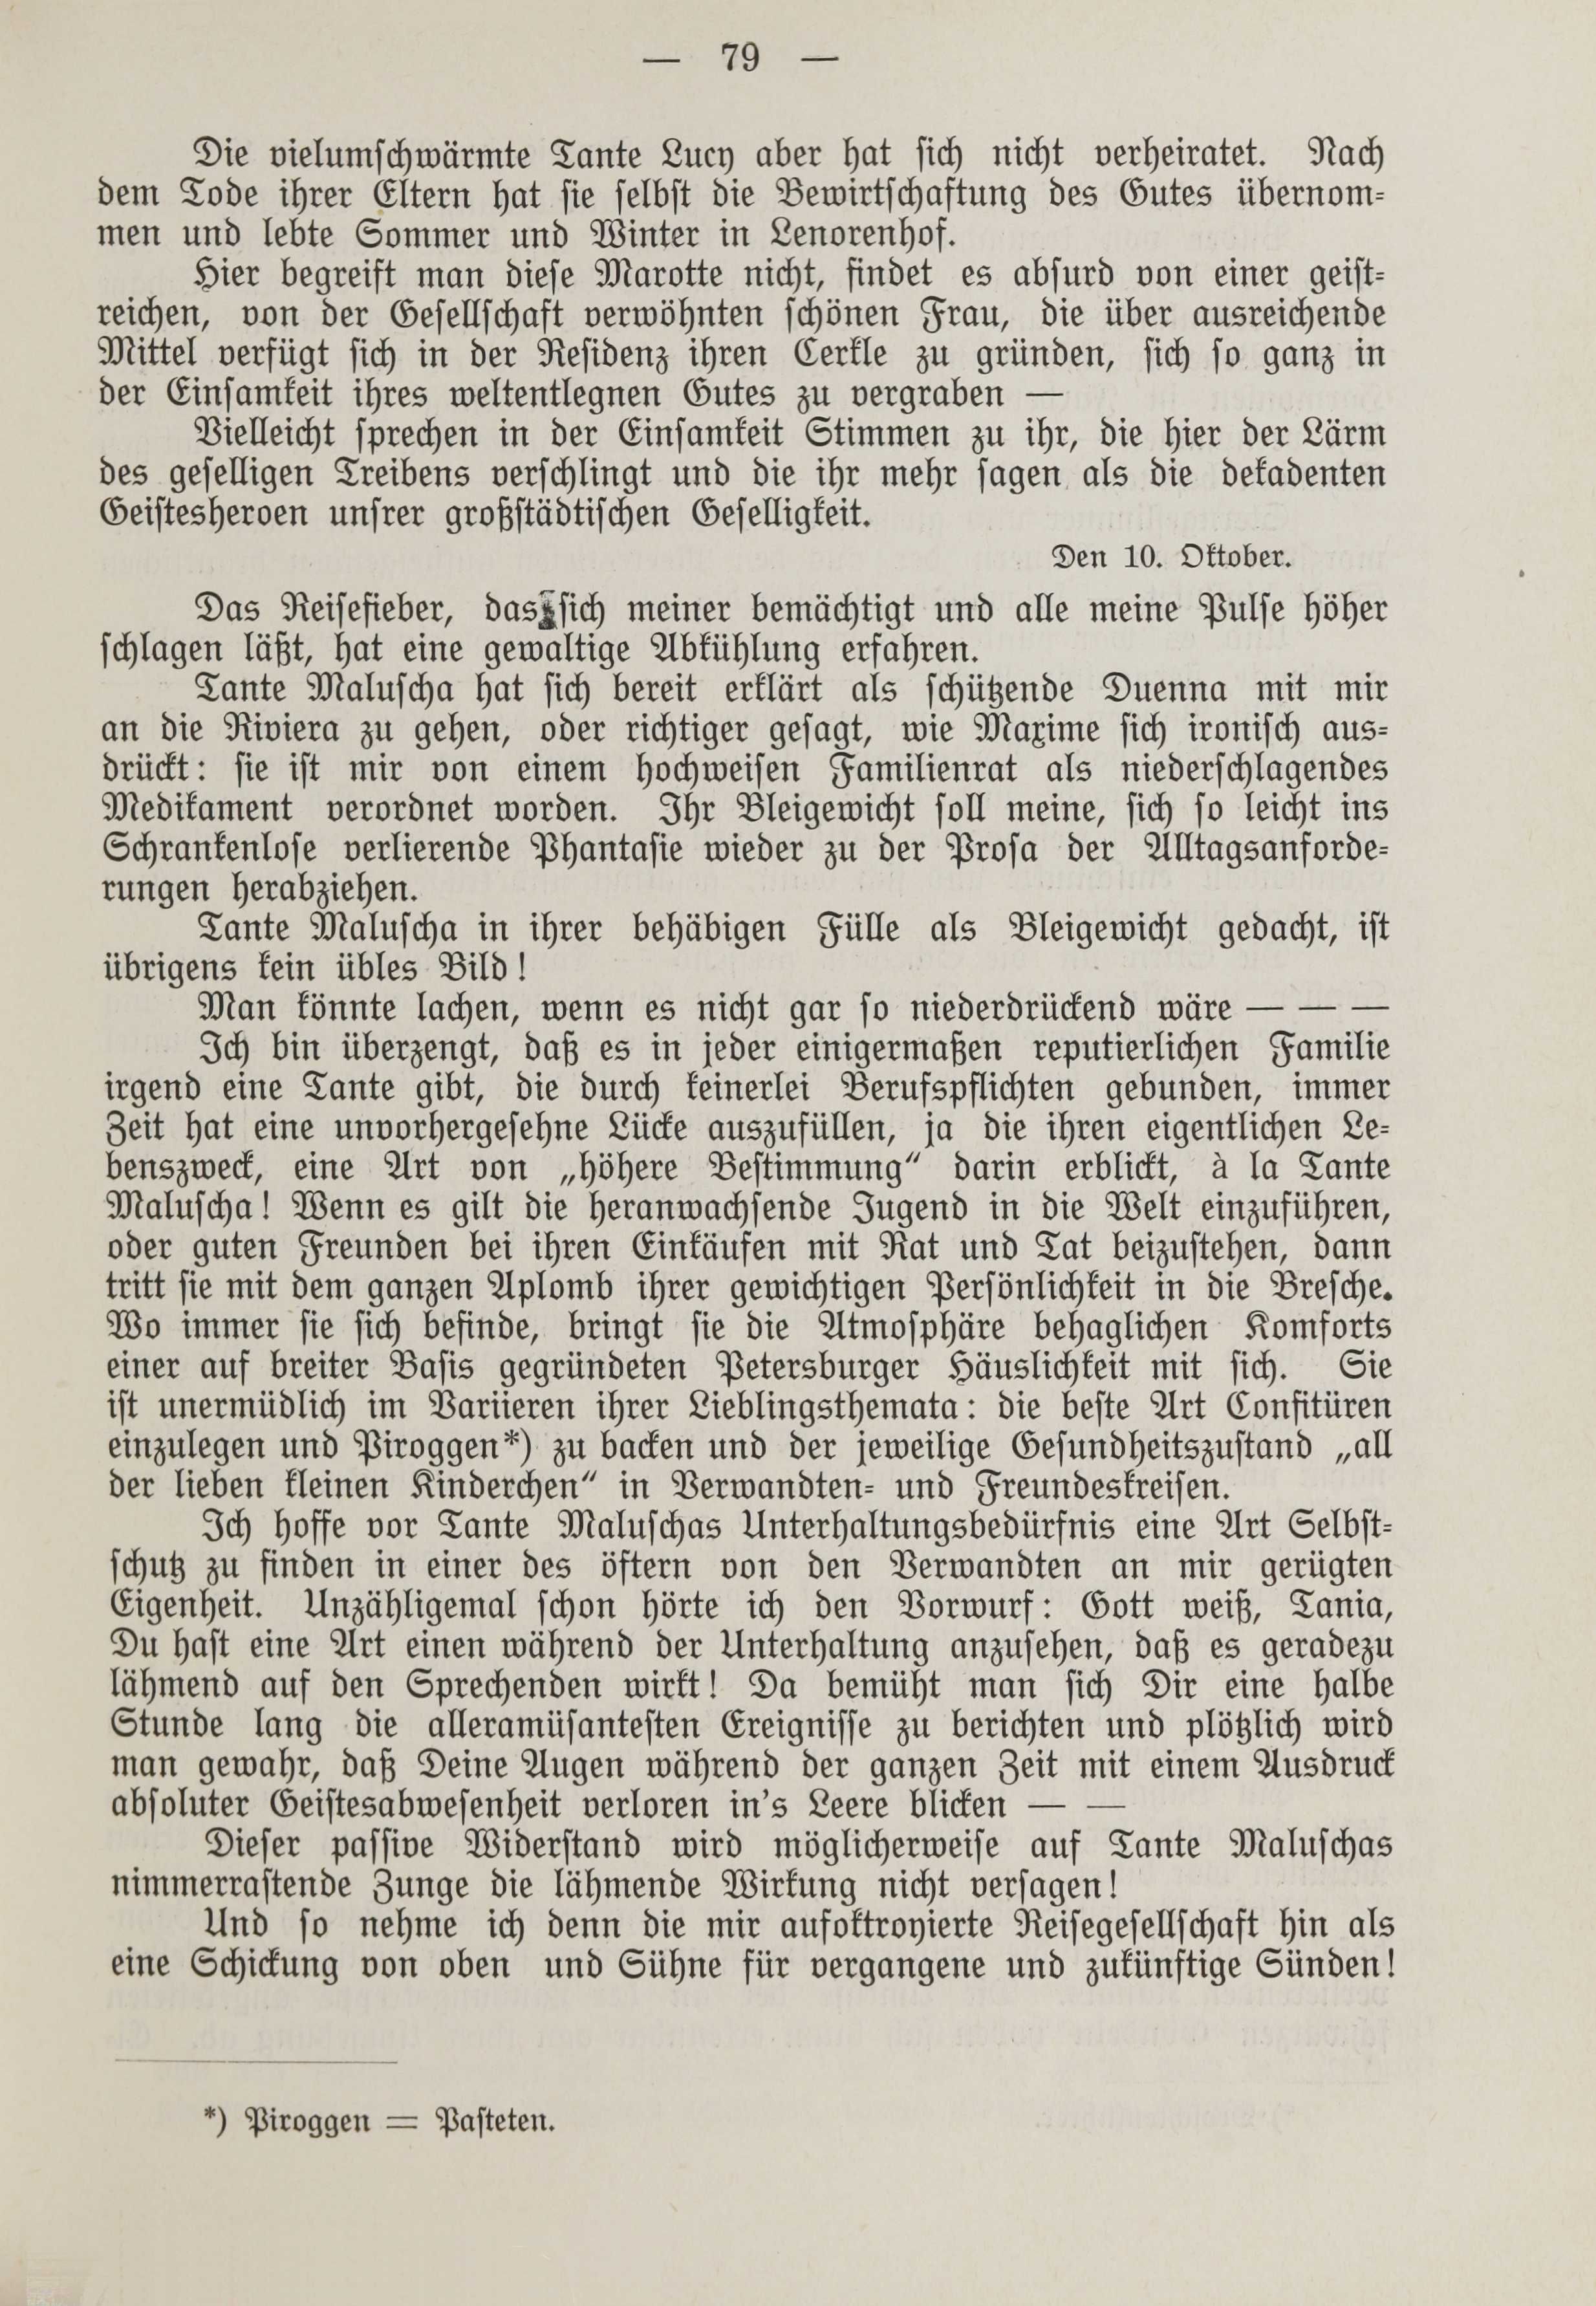 Deutsche Monatsschrift für Russland [1] (1912) | 86. (79) Main body of text